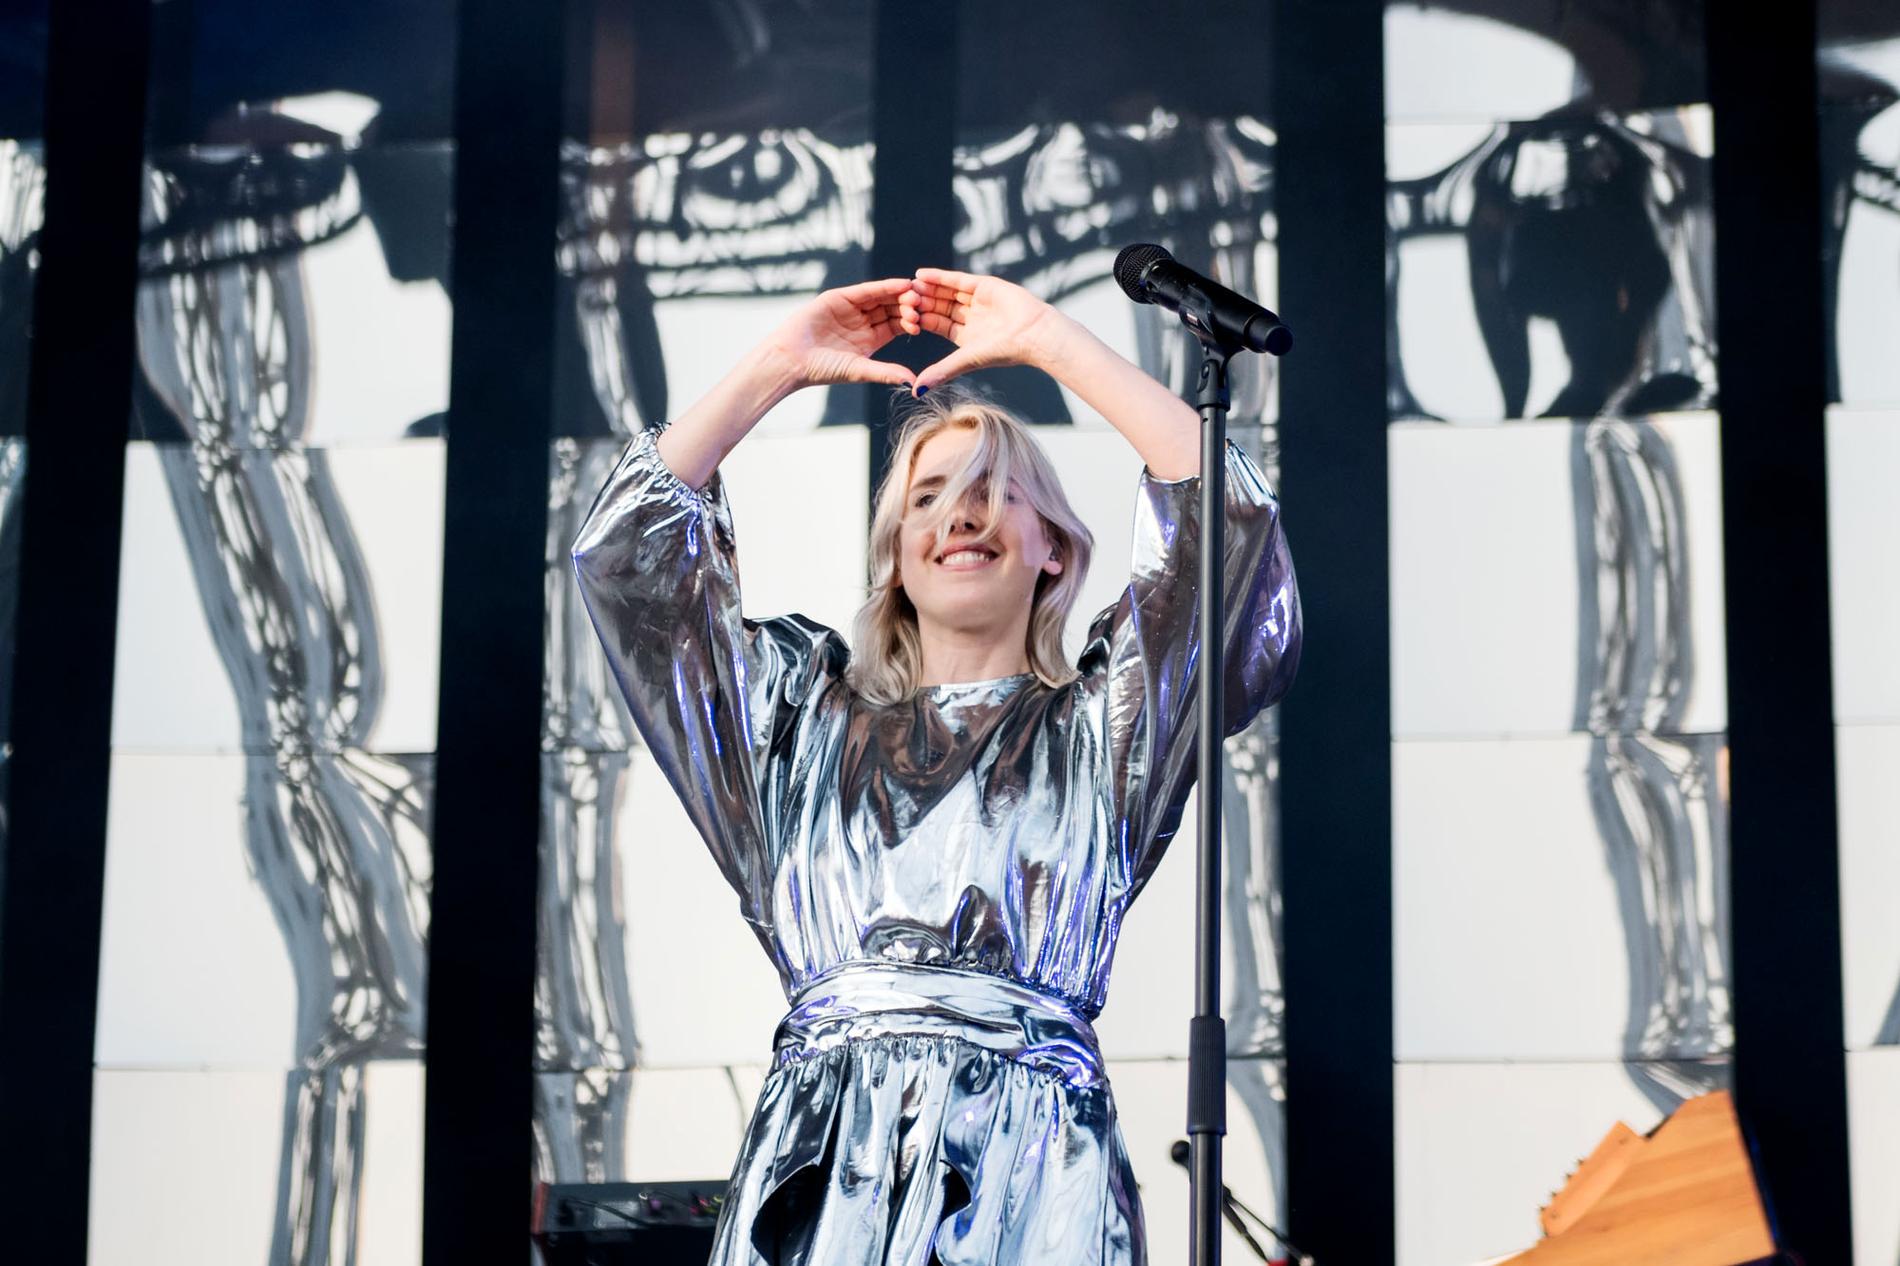 Veronica Maggio lånar ”edm-hjärtat” från festivalen Summerbursts artister.  